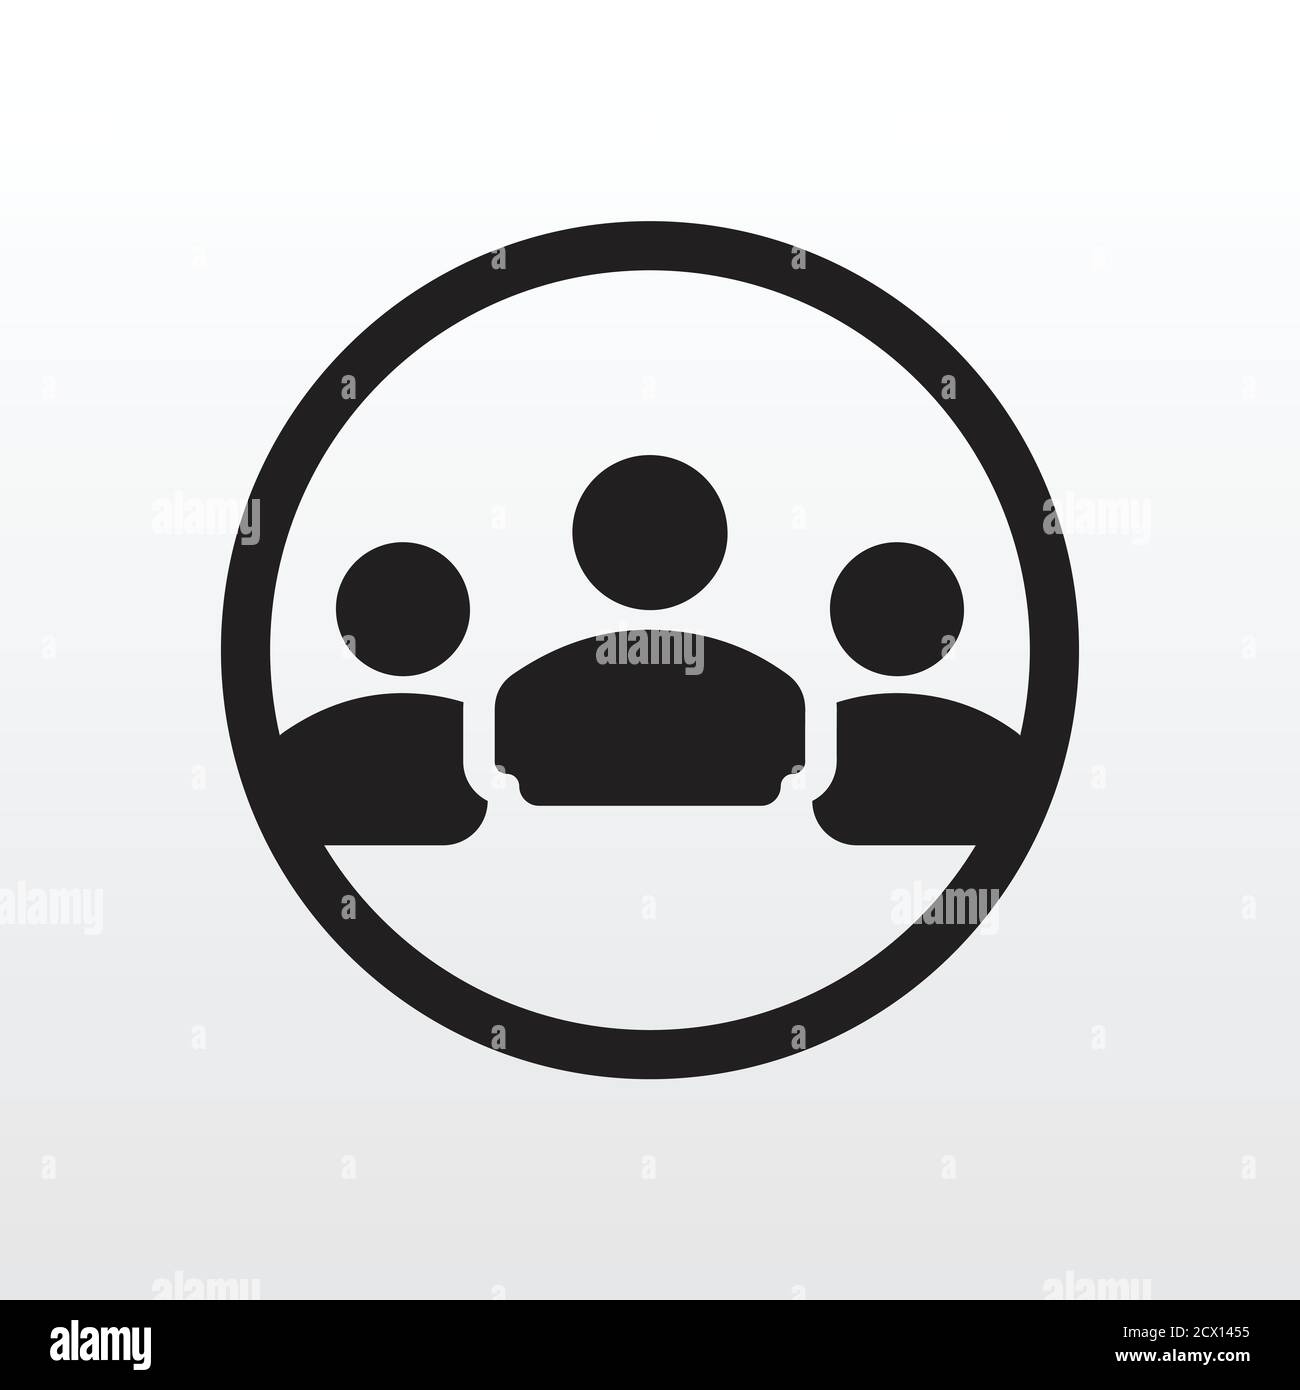 Icona Gruppo di persone. Illustrazione dell'icona del membro della comunità aziendale del team aziendale. Icona squadra Illustrazione Vettoriale